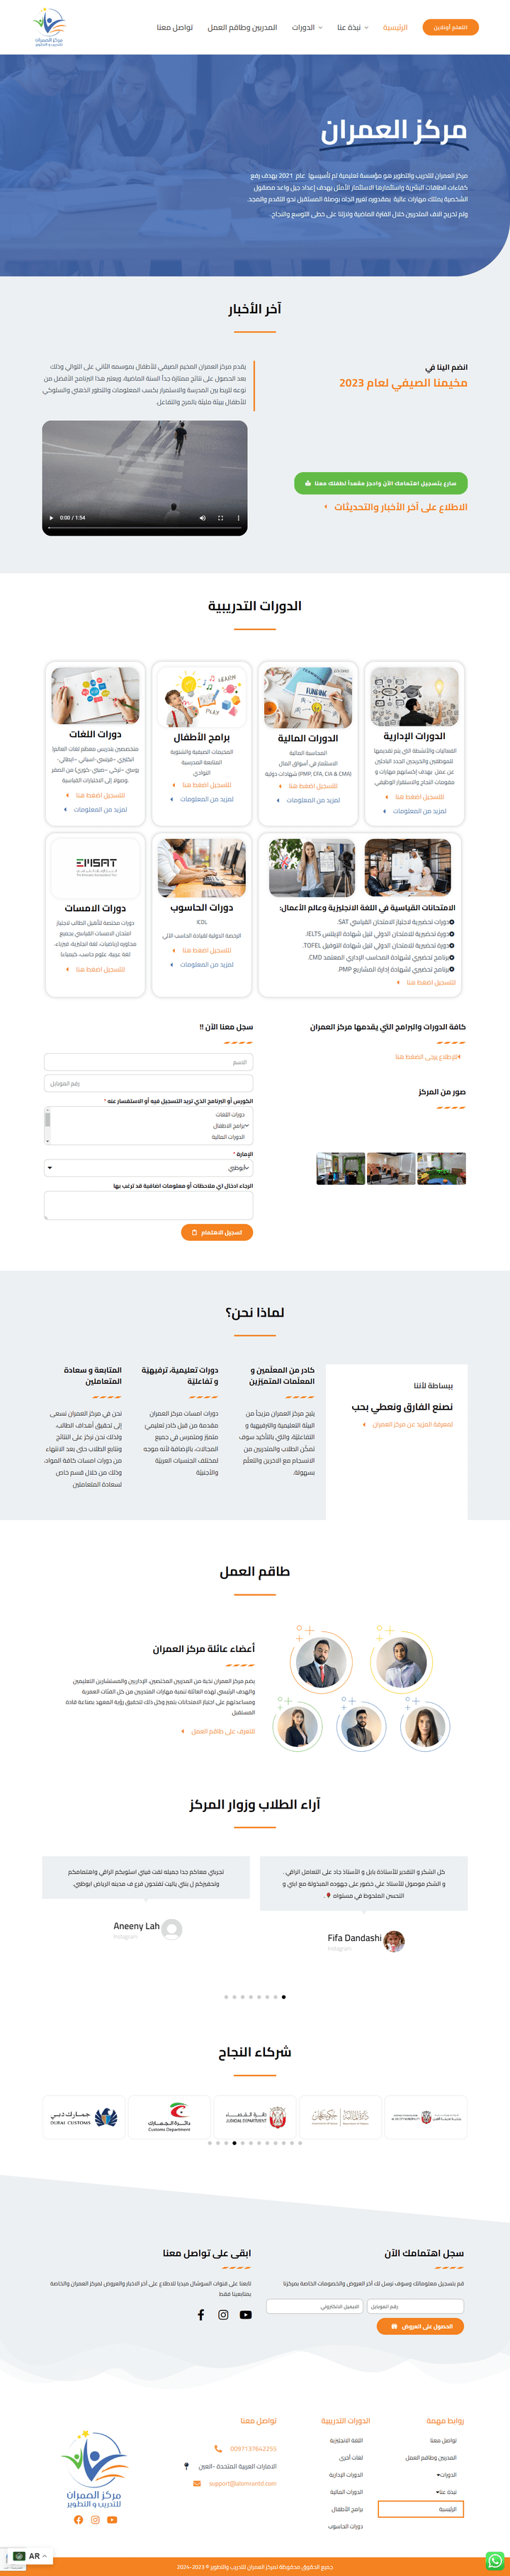 موقع لمركز العمران التدريبي في الامارات العربية المتحدة